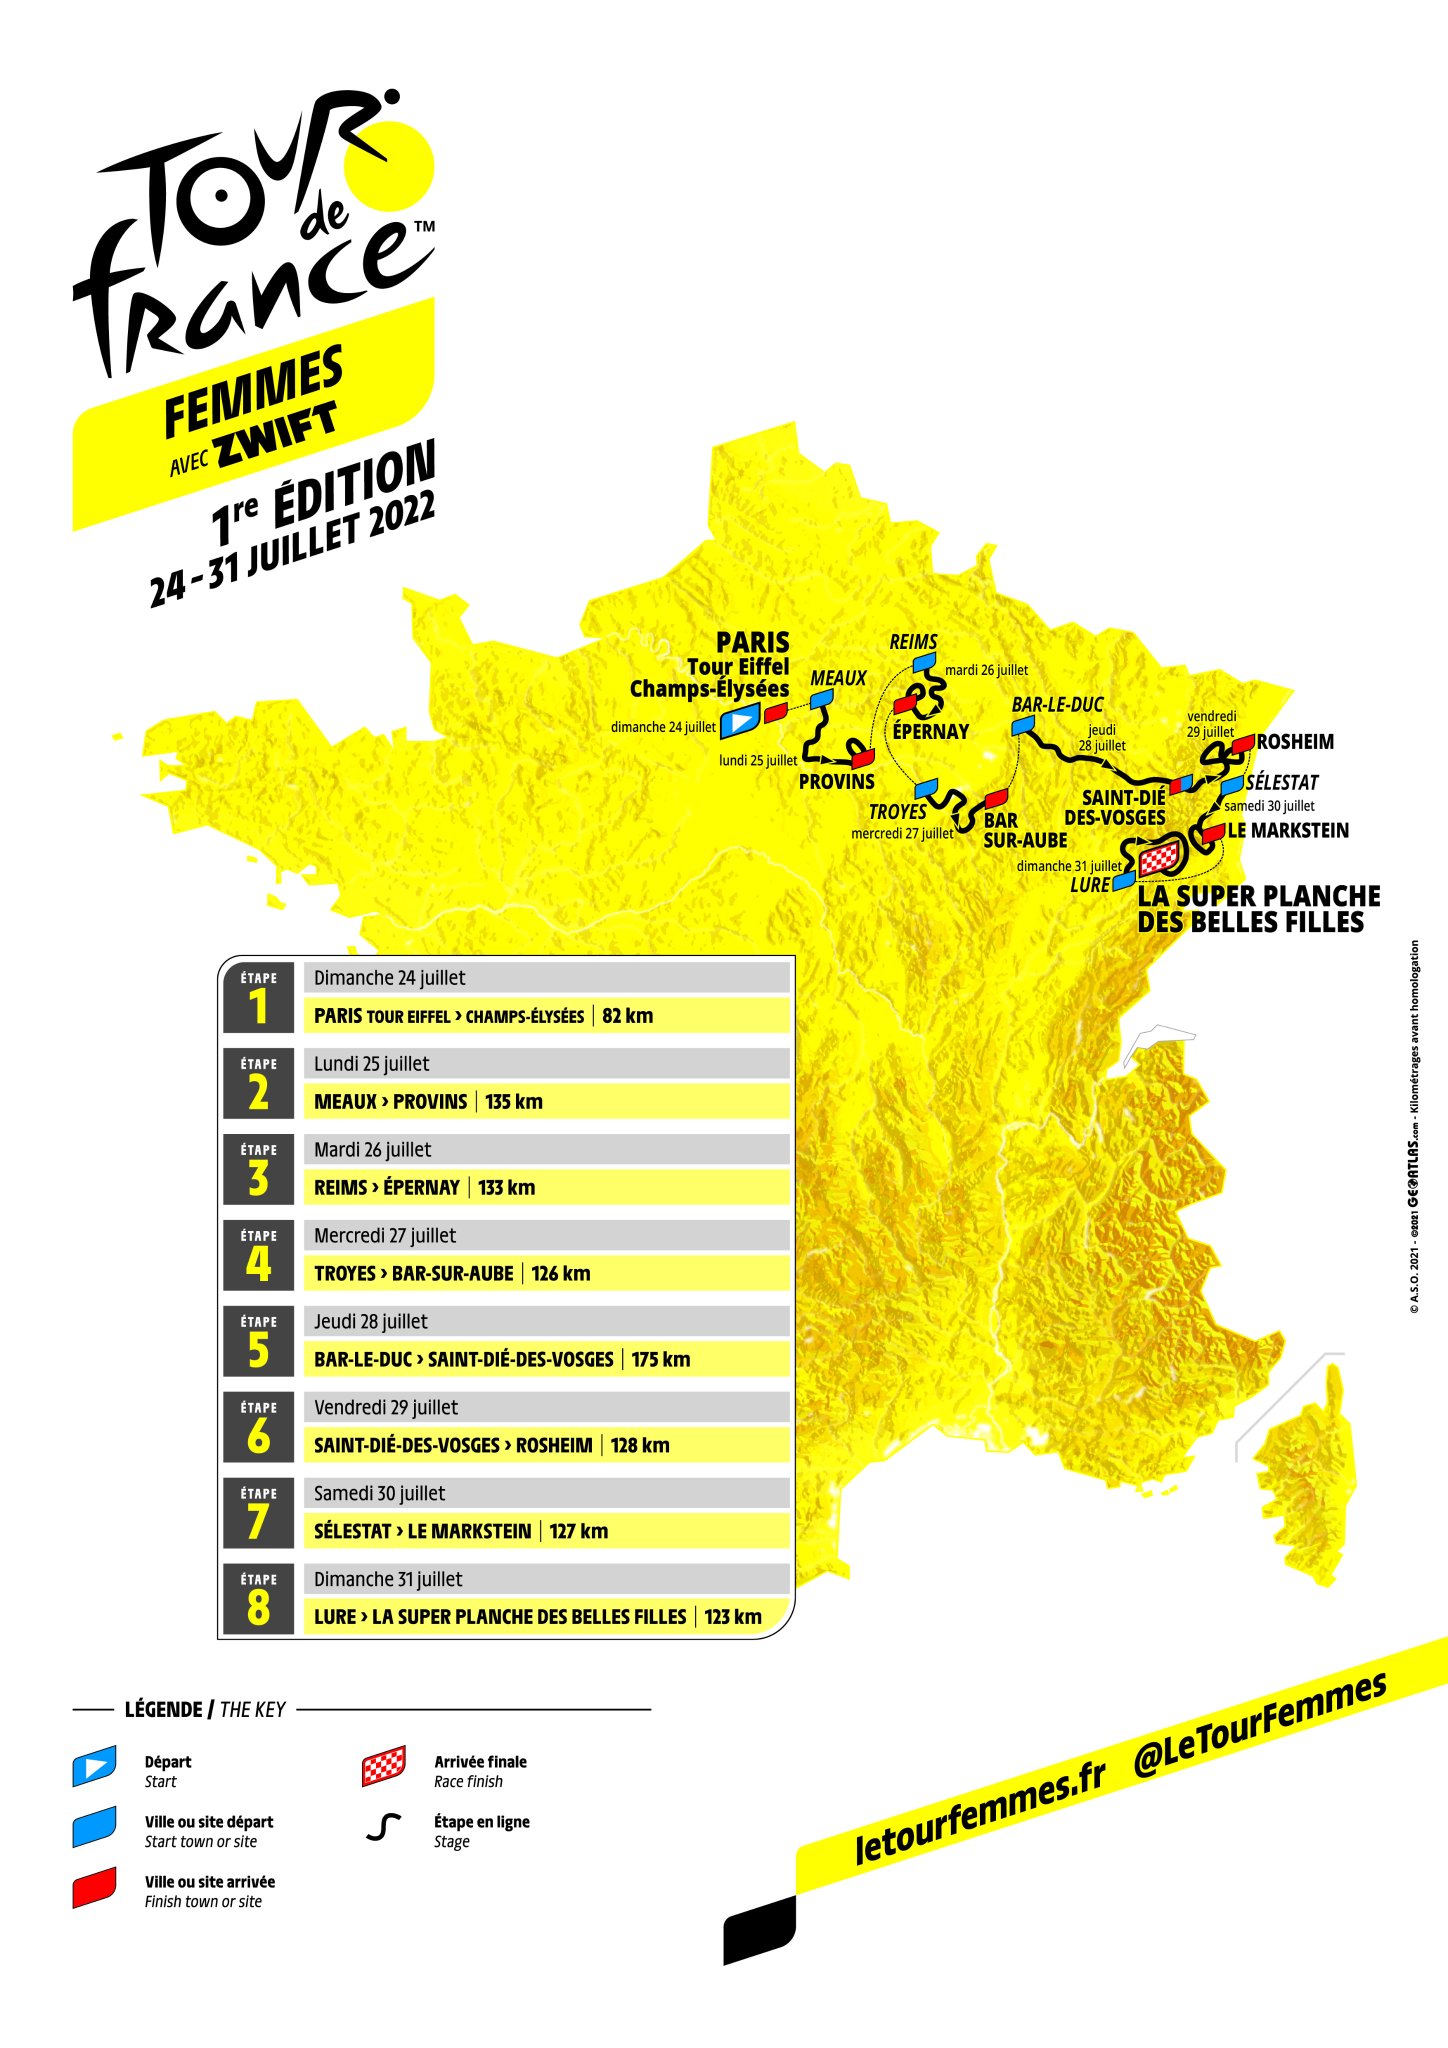 Annemiek van Vleuten reviews the Tour de France Femmes avec Zwift 2022 route